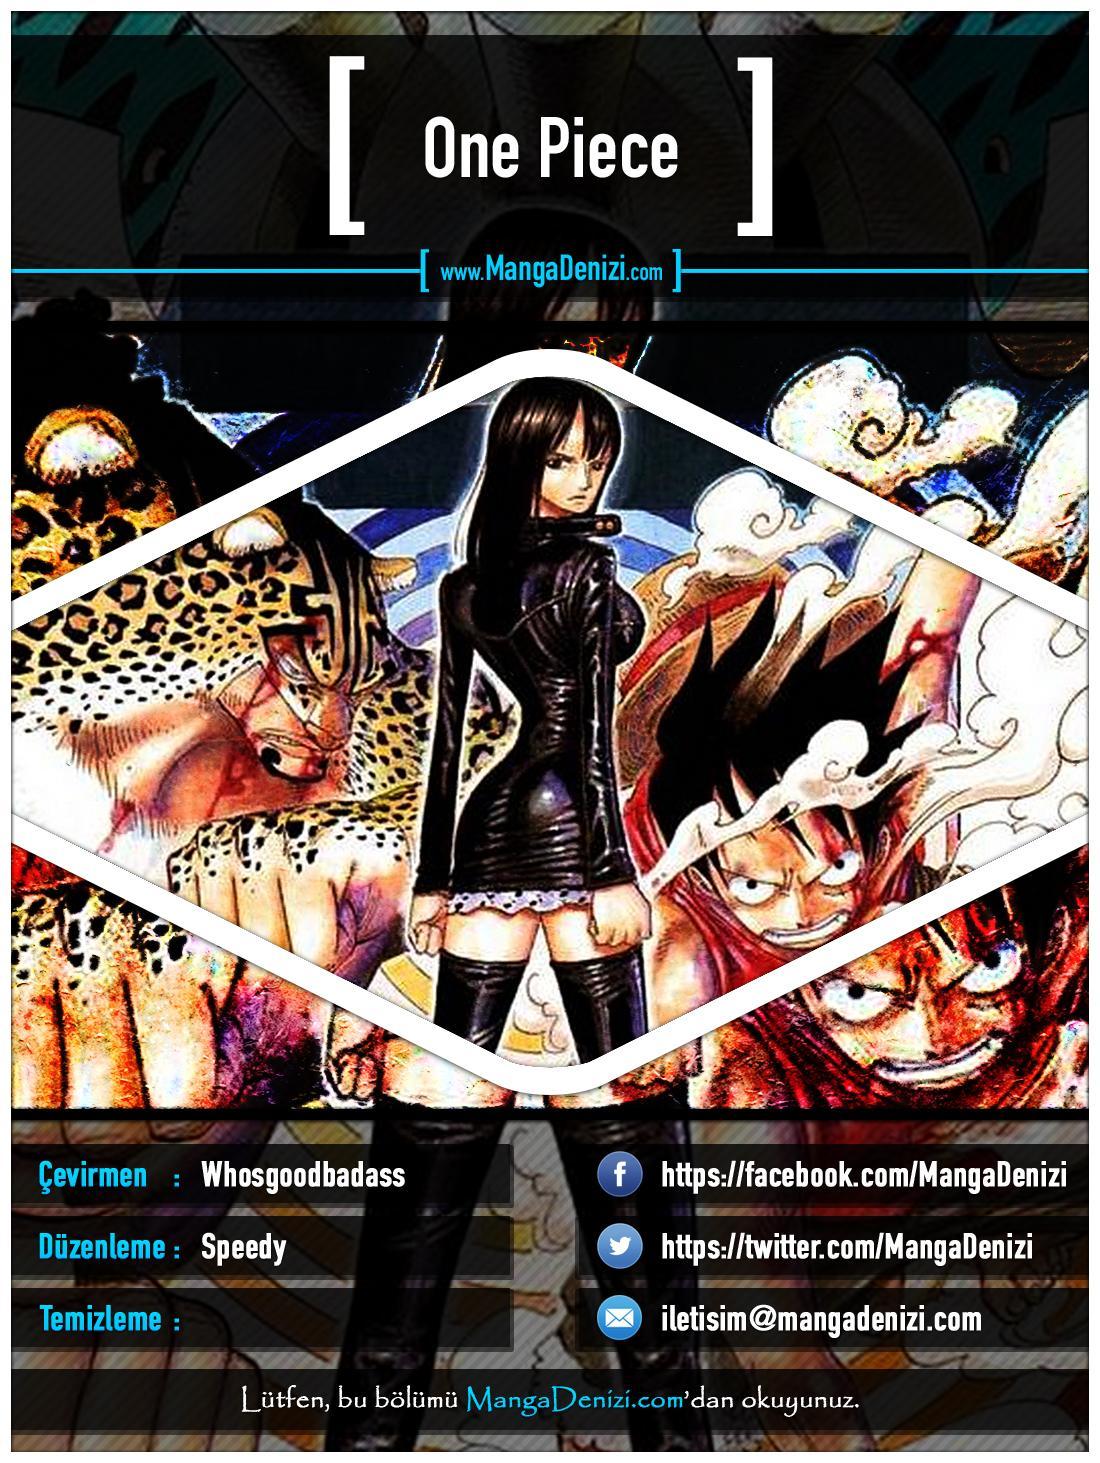 One Piece [Renkli] mangasının 0349 bölümünün 1. sayfasını okuyorsunuz.